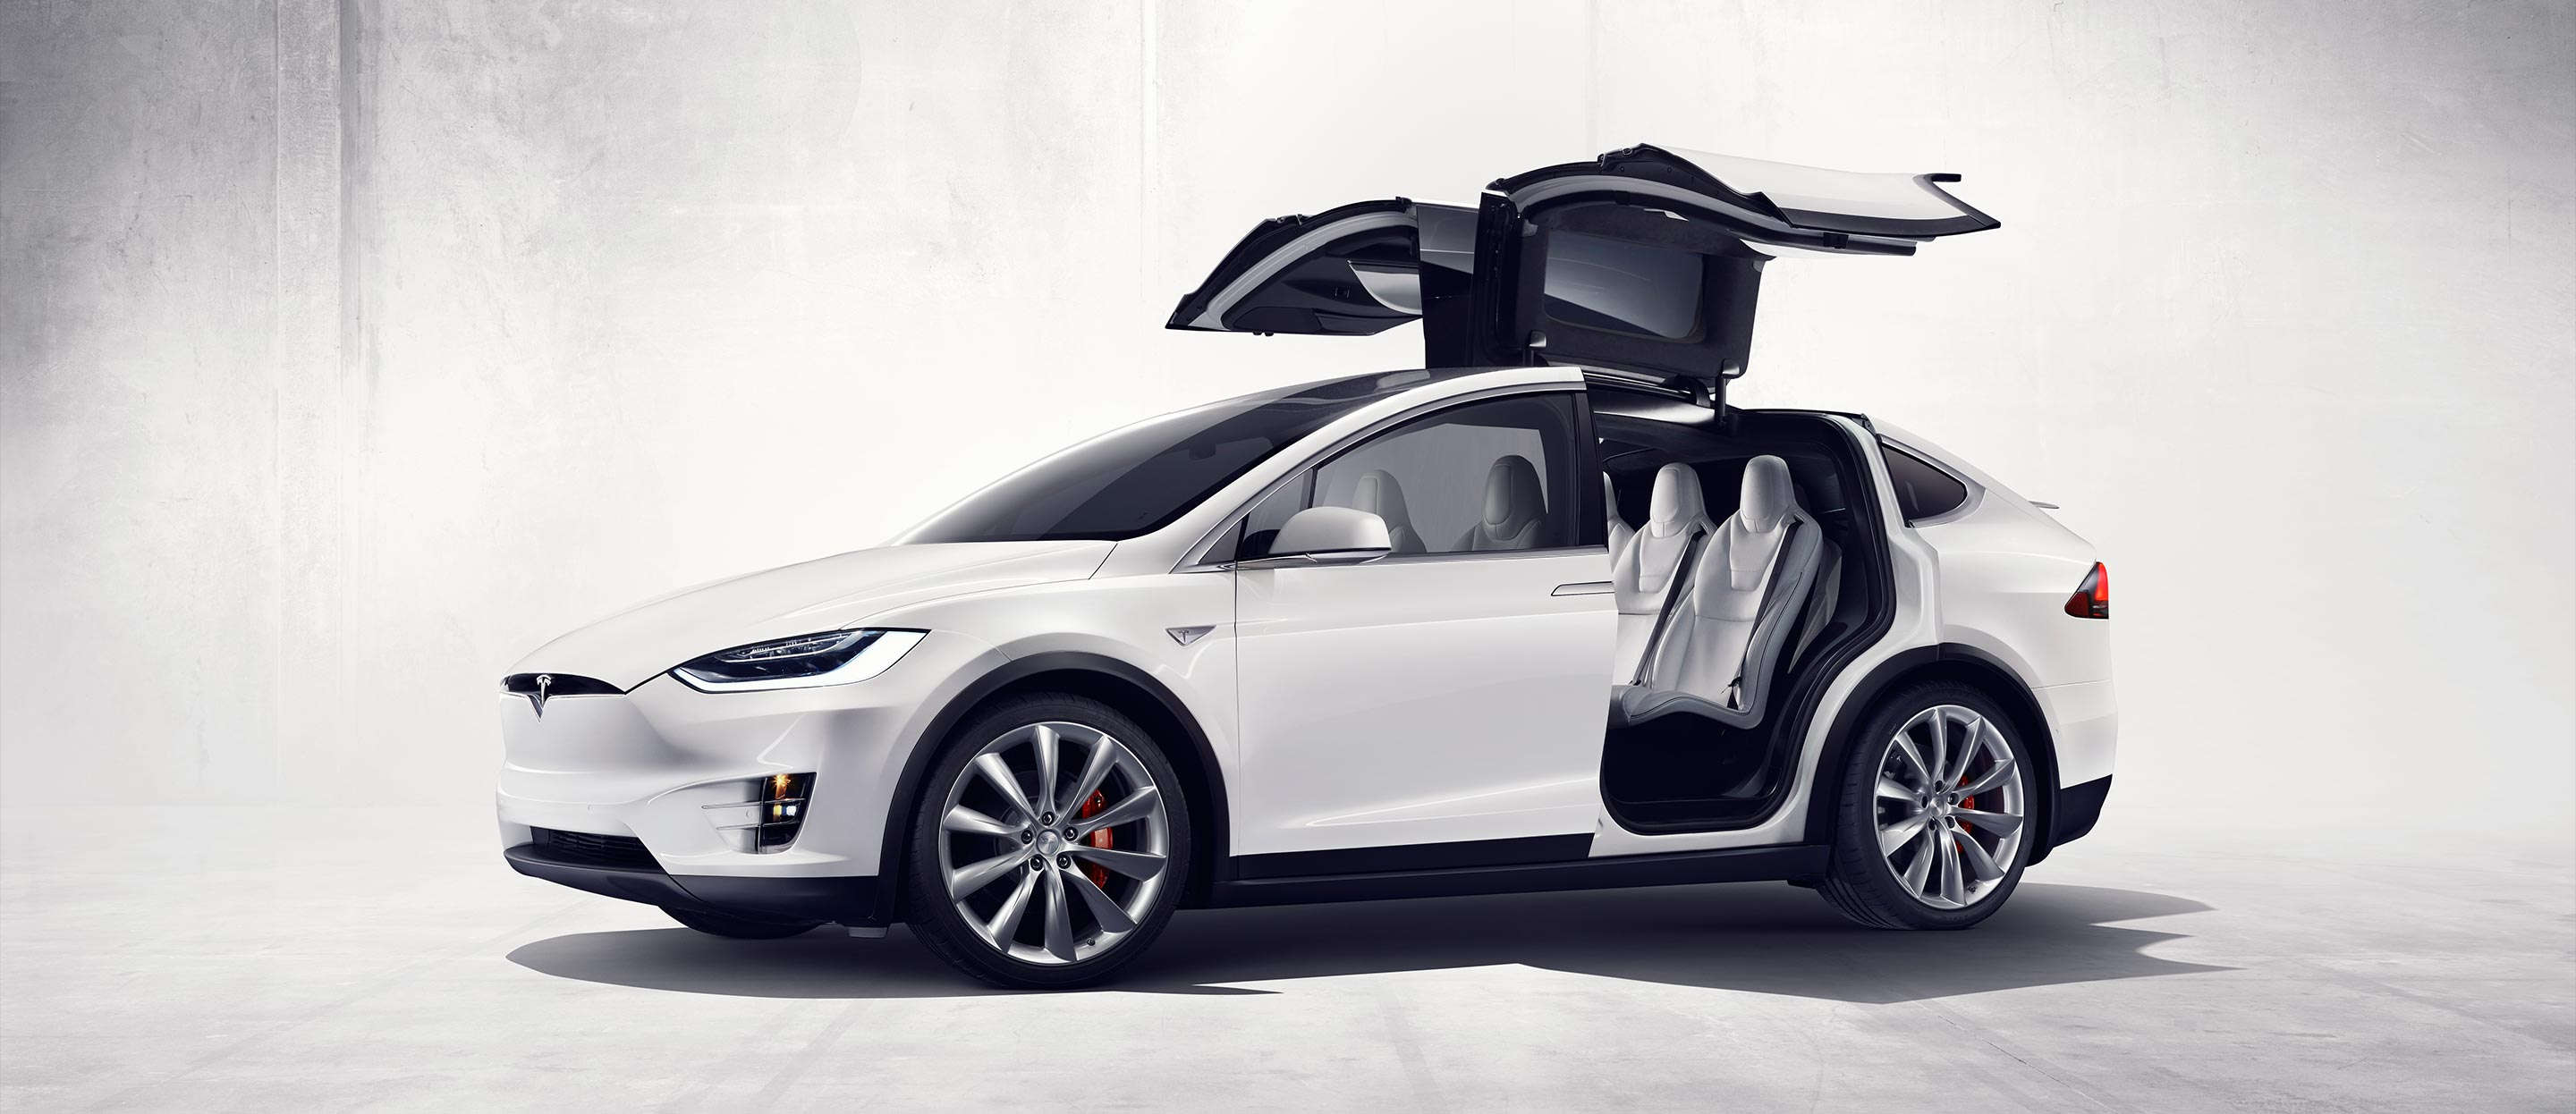 Tesla представила первый кроссовер – Model X